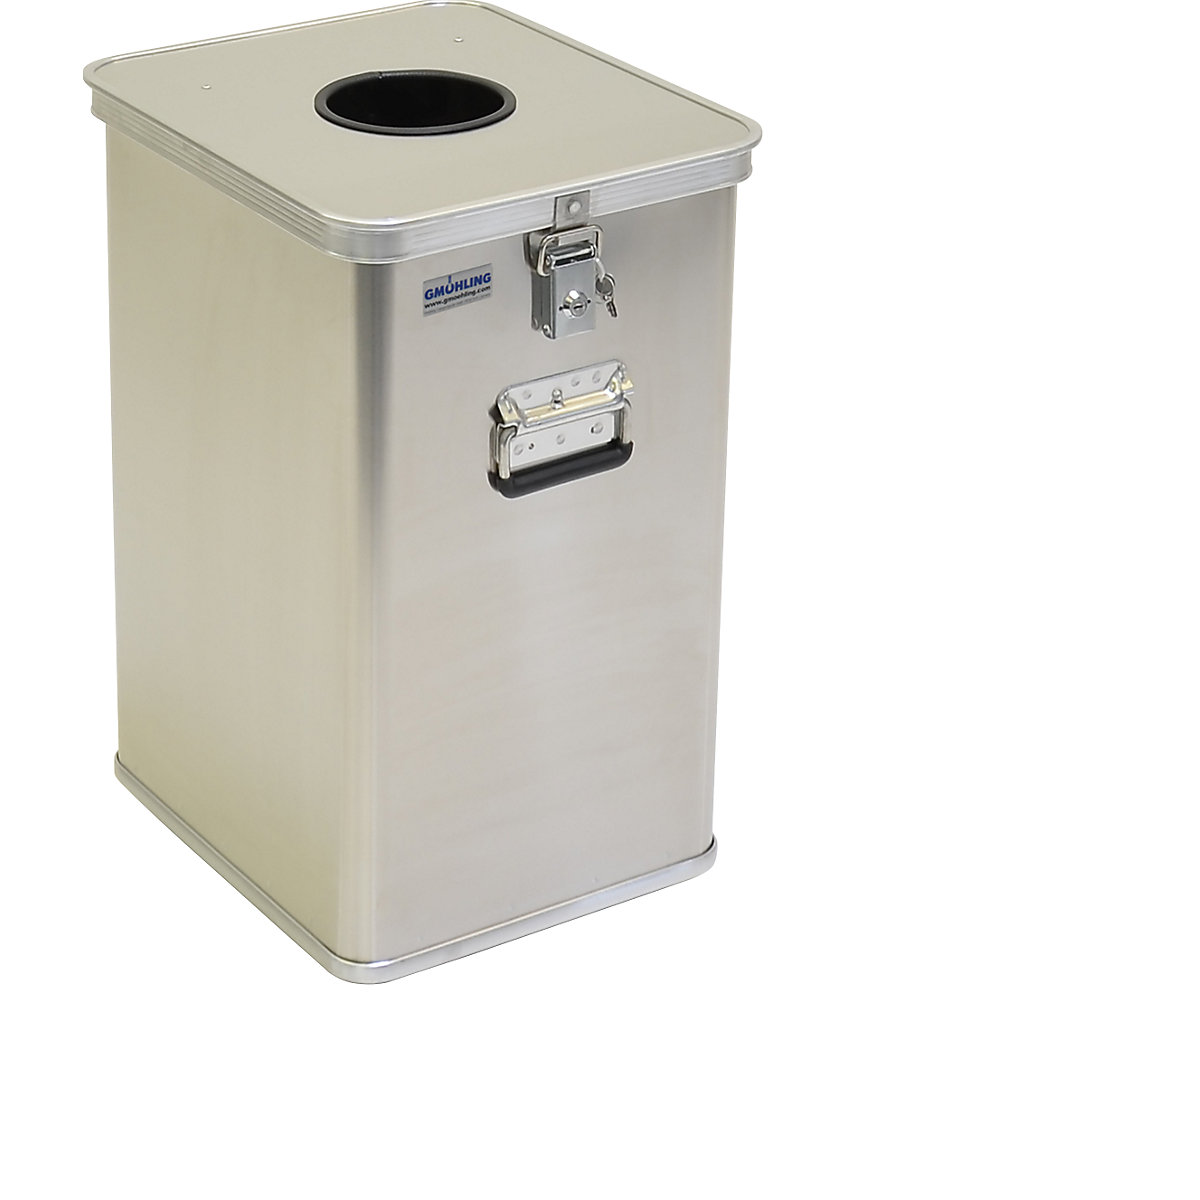 Contenedor de basura/recipiente para la eliminación de residuos G®-DROP – Gmöhling